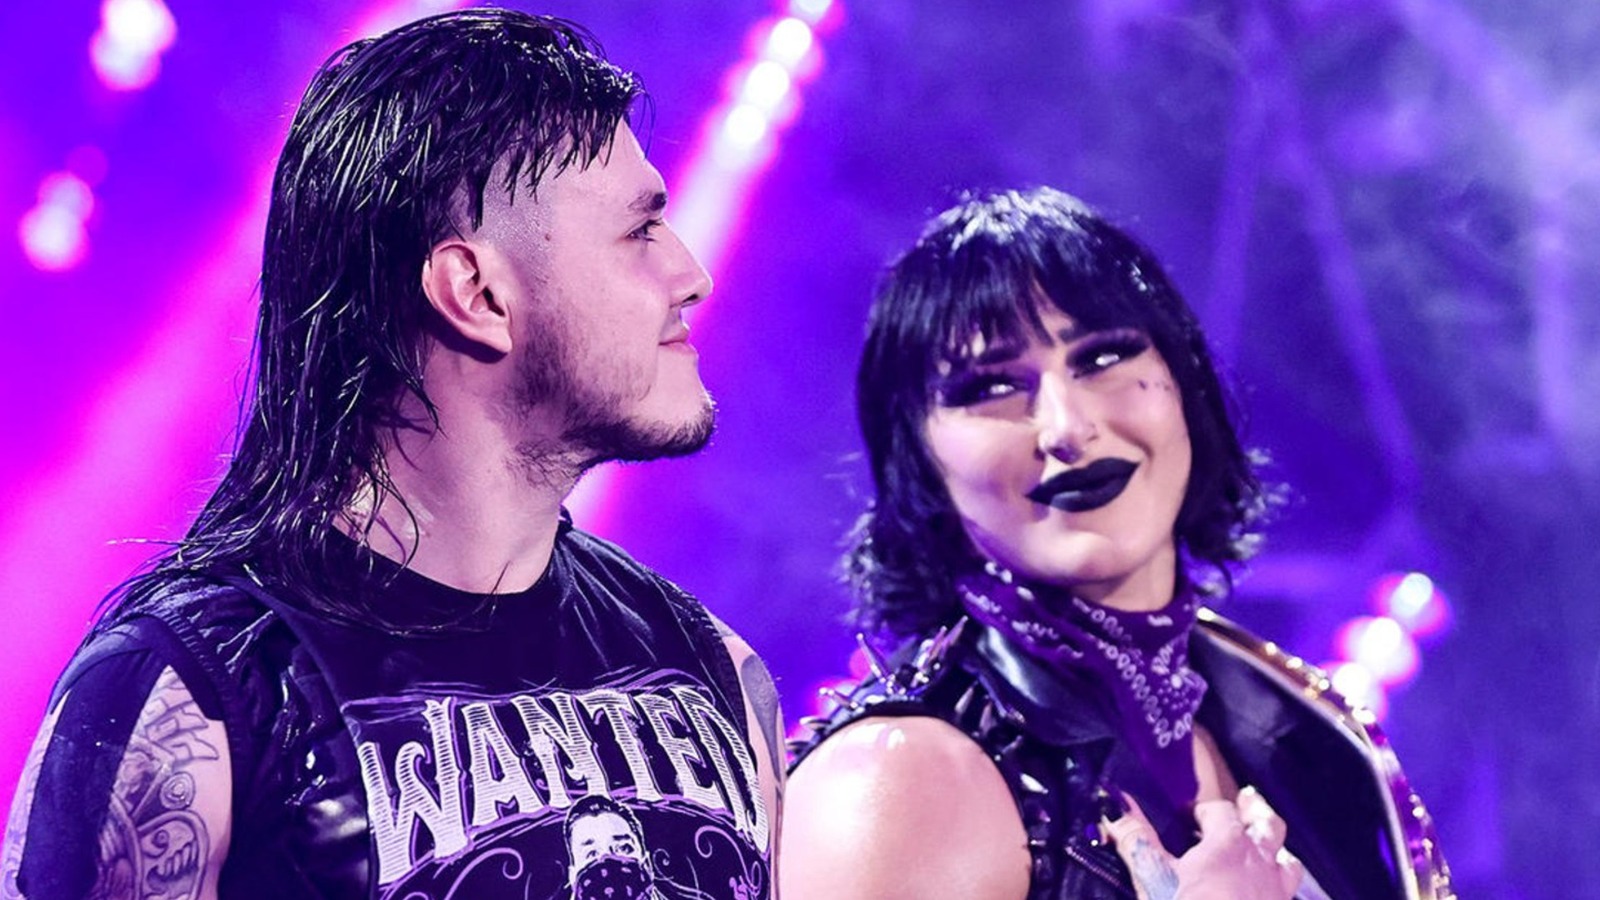 Las calificaciones de WWE NXT aumentan para el episodio del 22 de agosto con Rhea Ripley y Dominik Mysterio